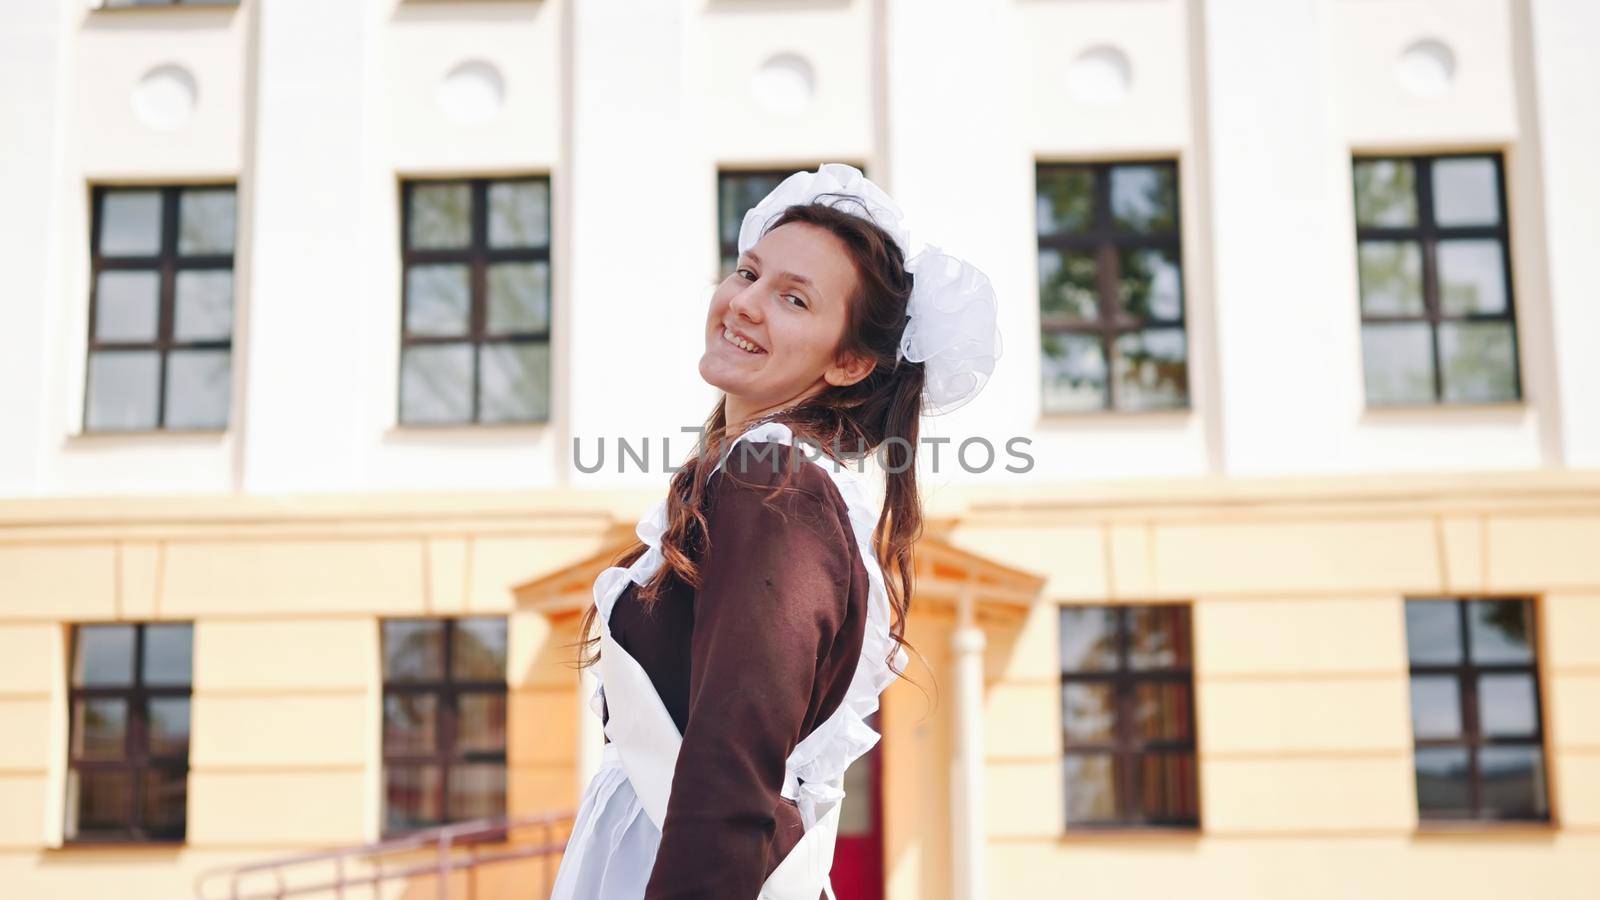 Happy Russian schoolgirl on the last day of school